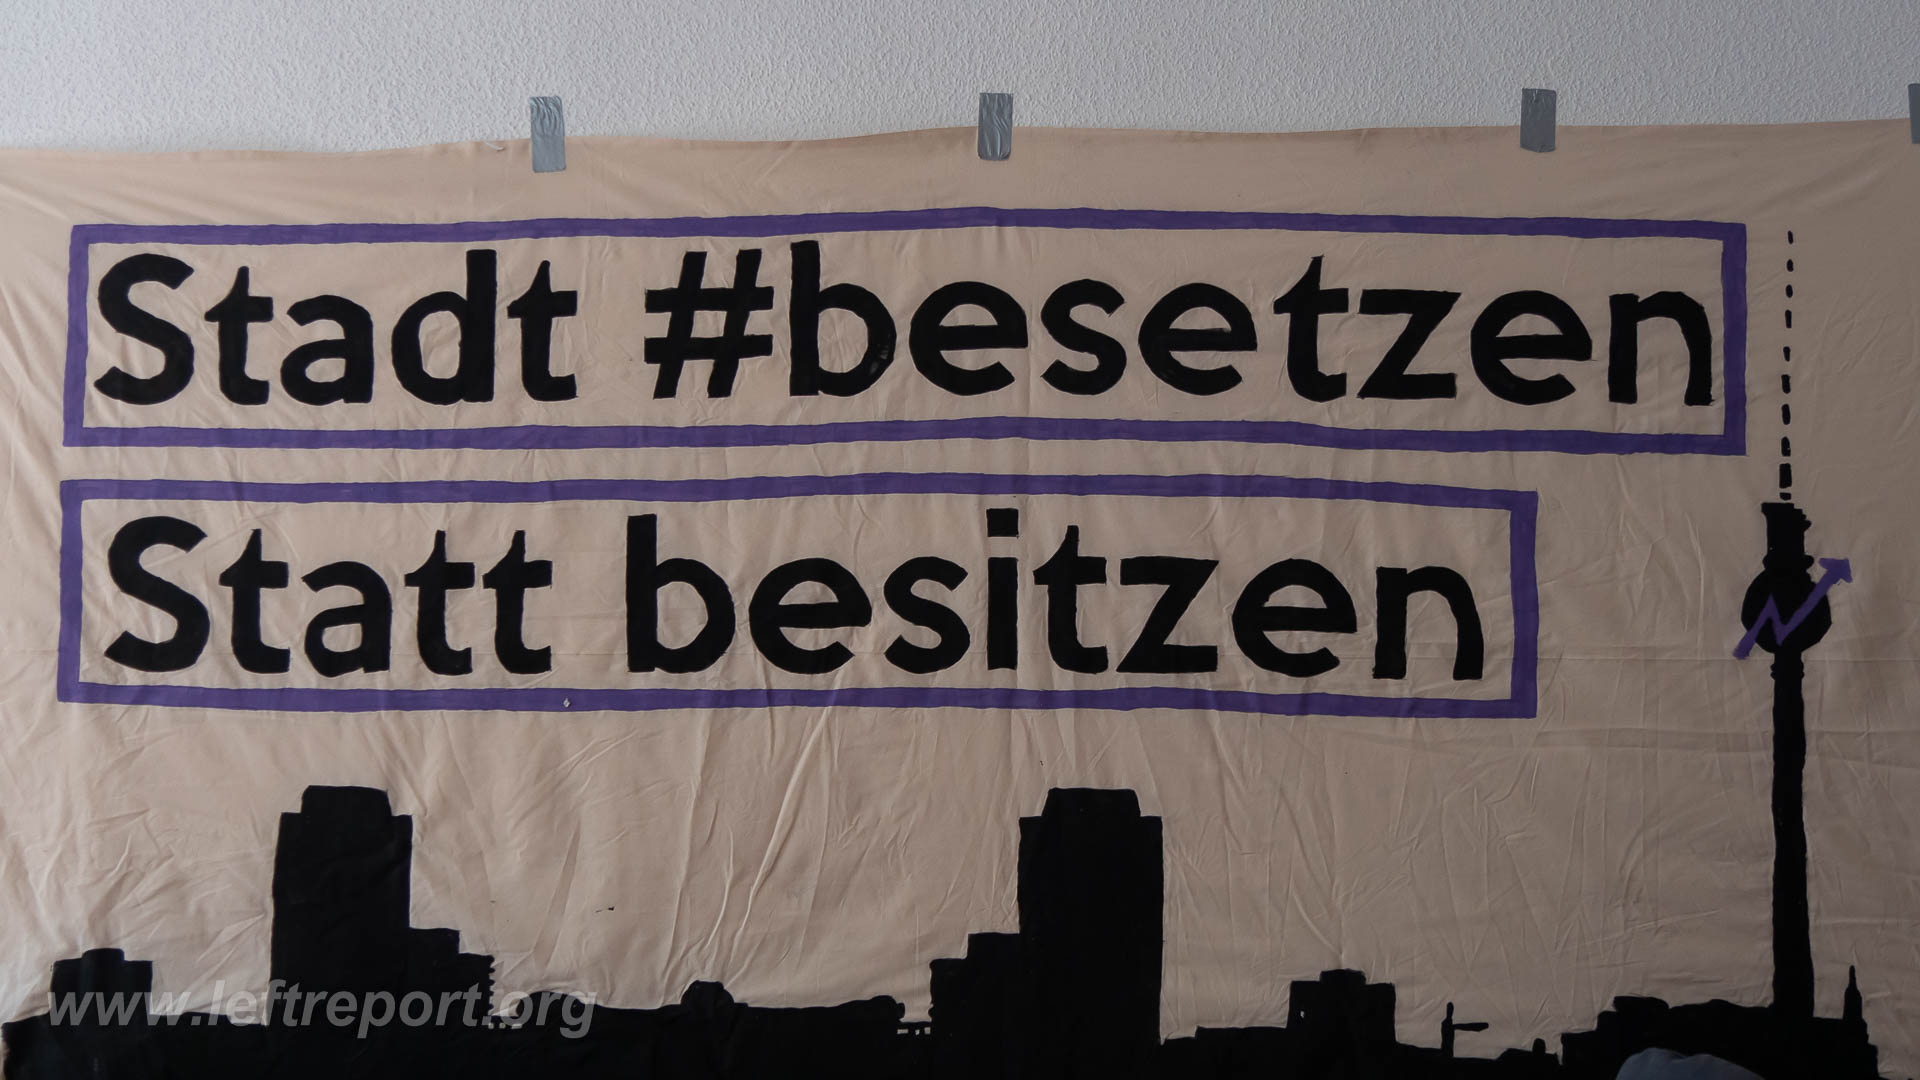 Transparent mit Aufschrift: "Stadt #besetzen"